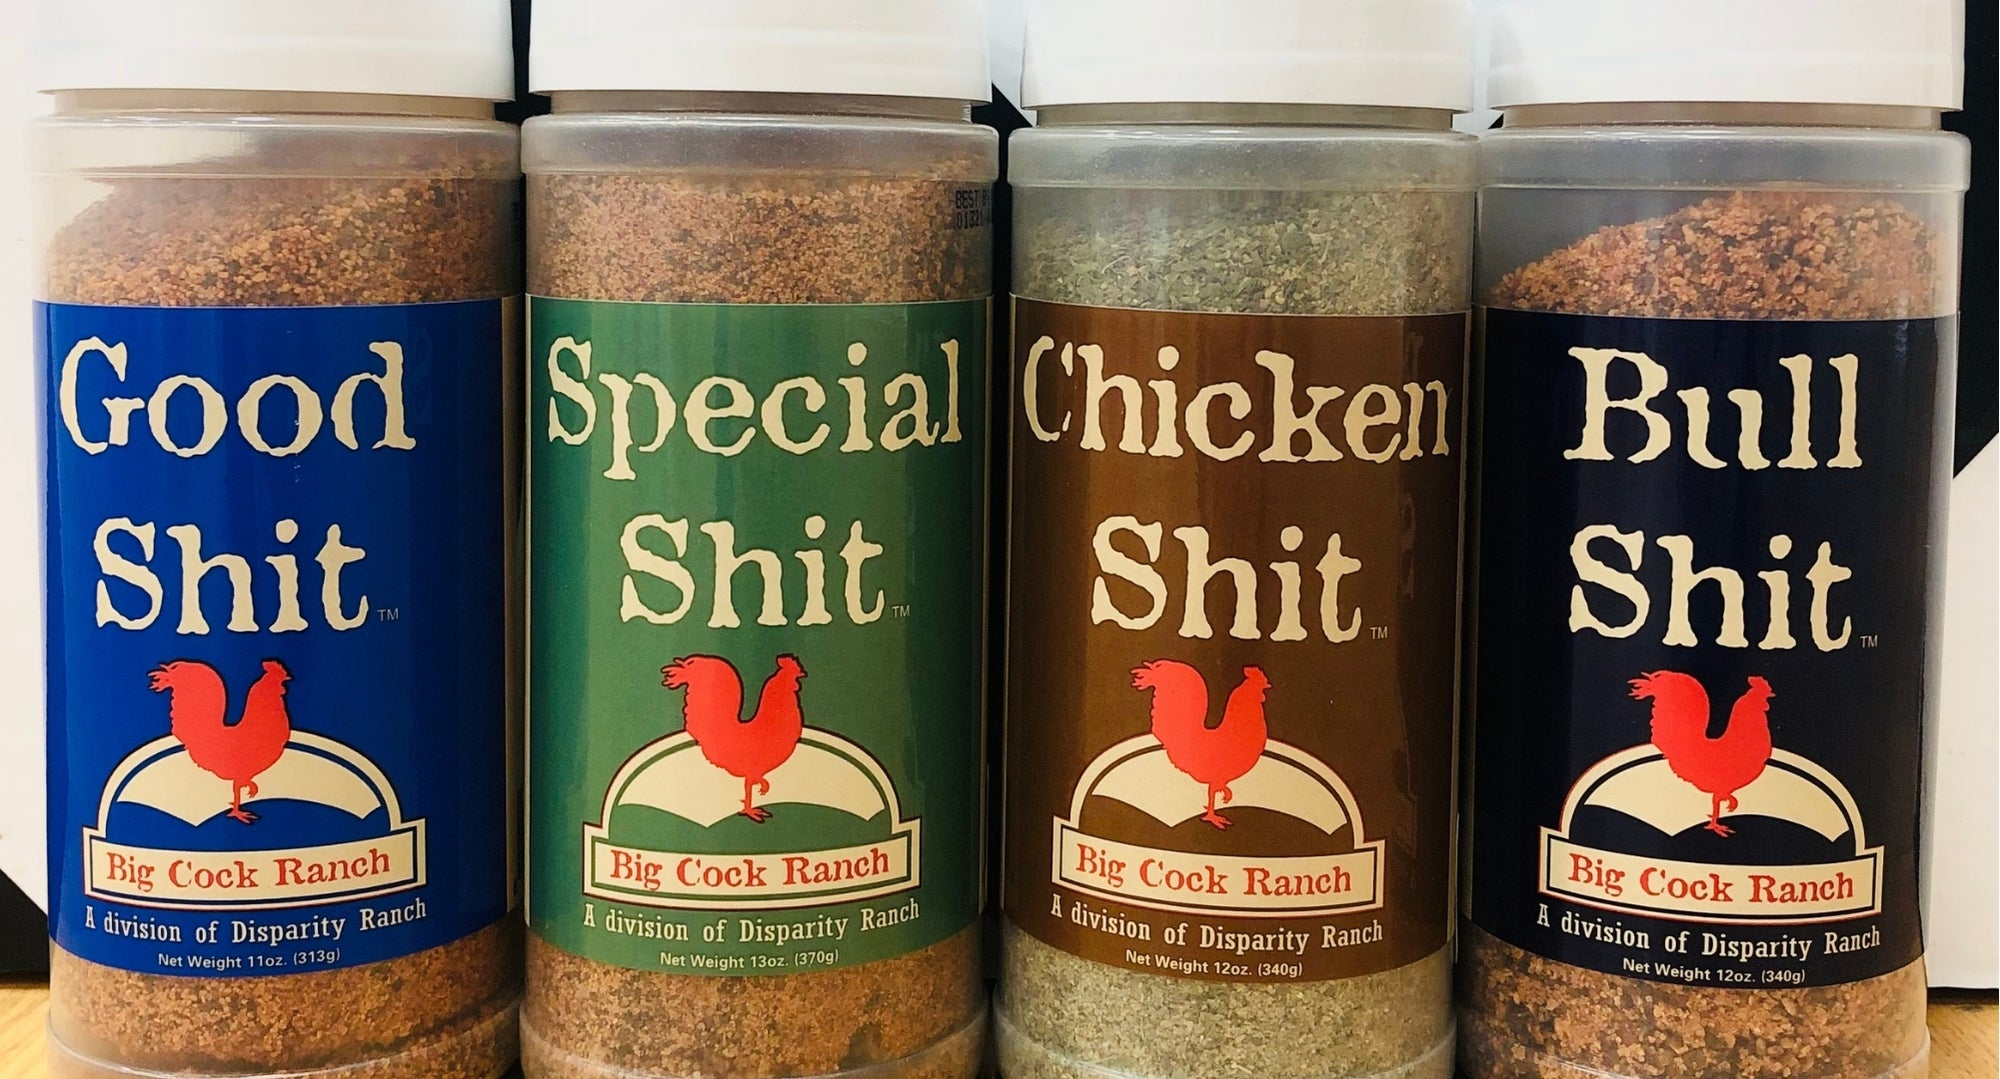 Chicken Sh*t - Seasoning